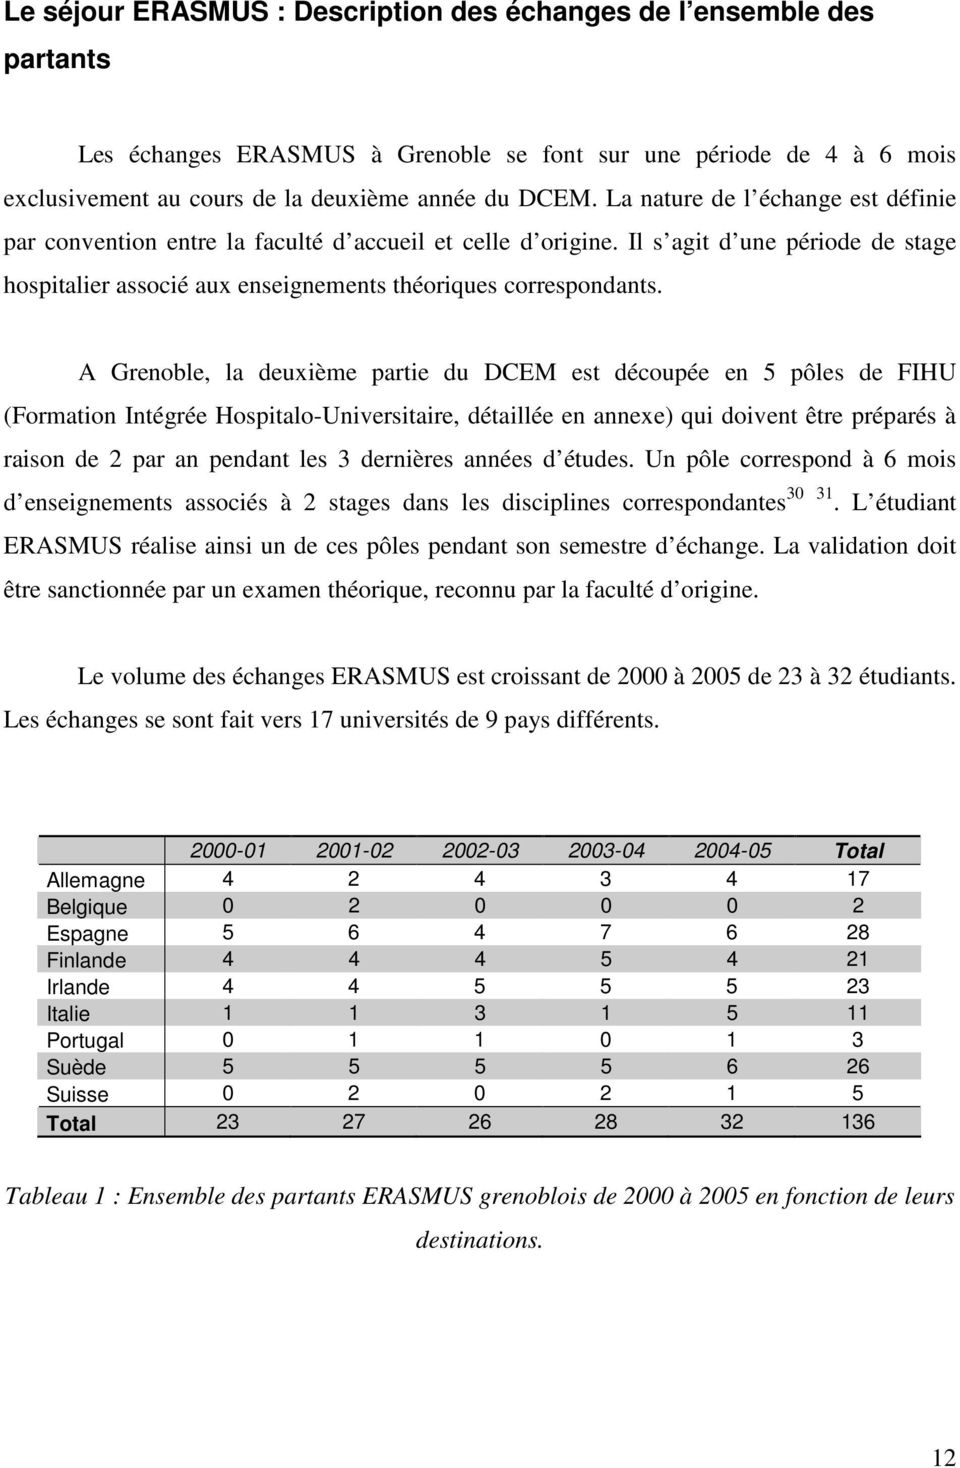 A Grenoble, la deuxième partie du DCEM est découpée en 5 pôles de FIHU (Formation Intégrée Hospitalo-Universitaire, détaillée en annexe) qui doivent être préparés à raison de 2 par an pendant les 3